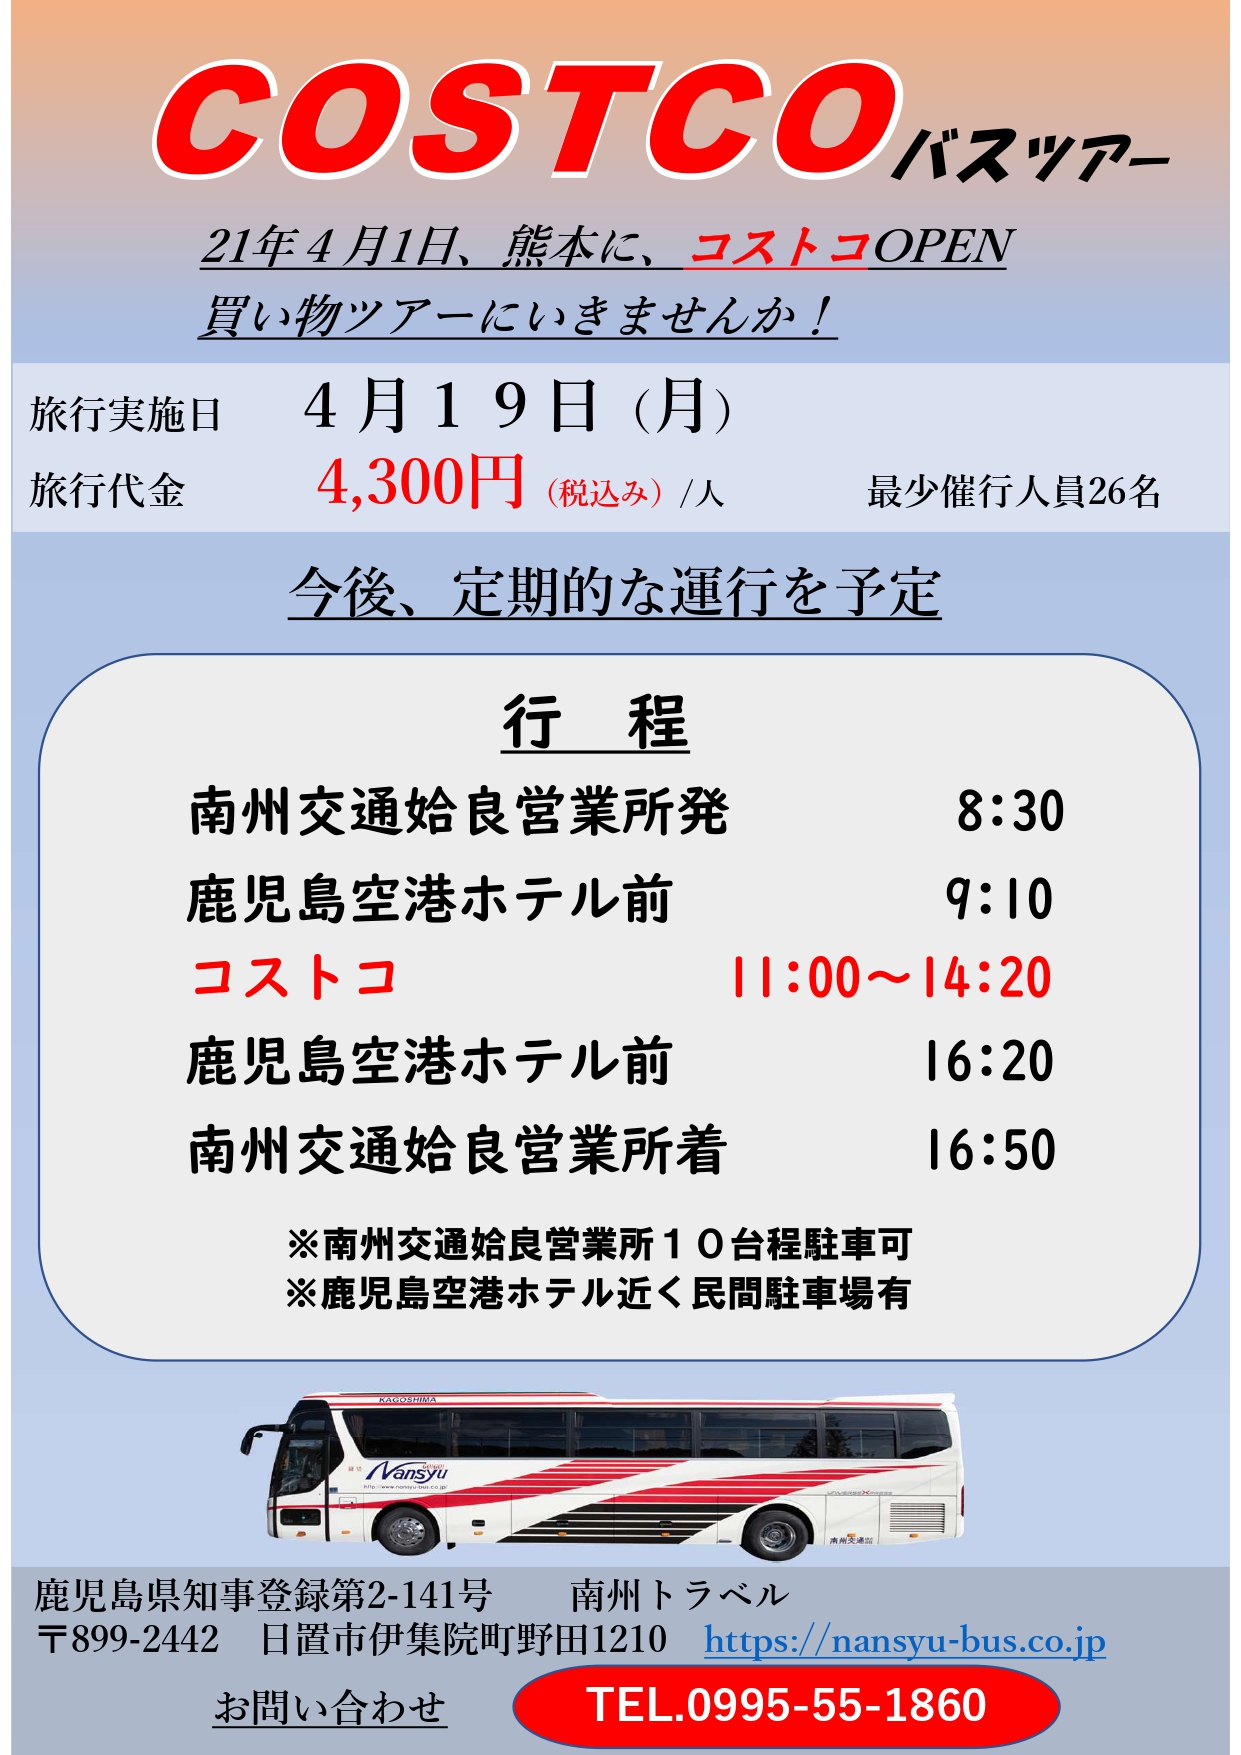 熊本にコストコopen Costcoバスツアー 九州 四国 中国 近畿 西日本の貸切バス 観光バスは 南州交通にお任せ下さい 南州交通株式会社